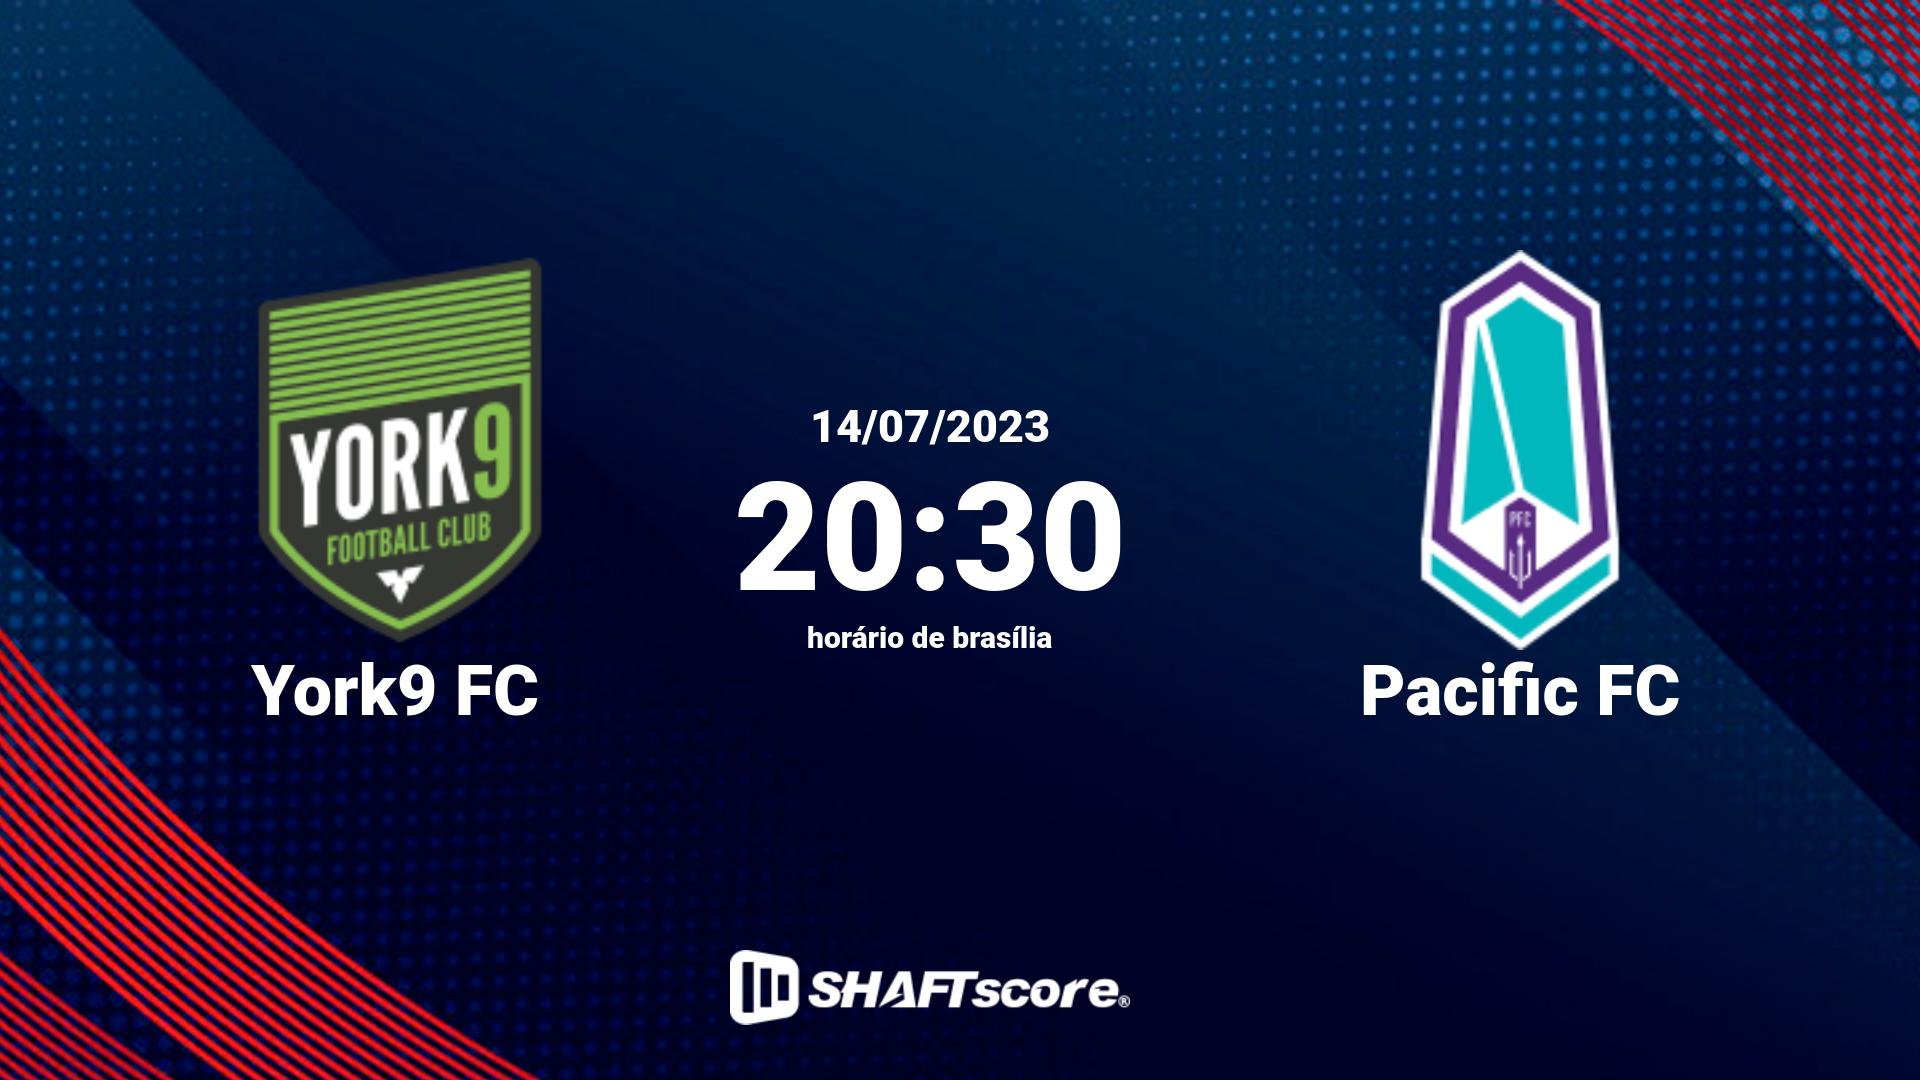 Estatísticas do jogo York9 FC vs Pacific FC 14.07 20:30